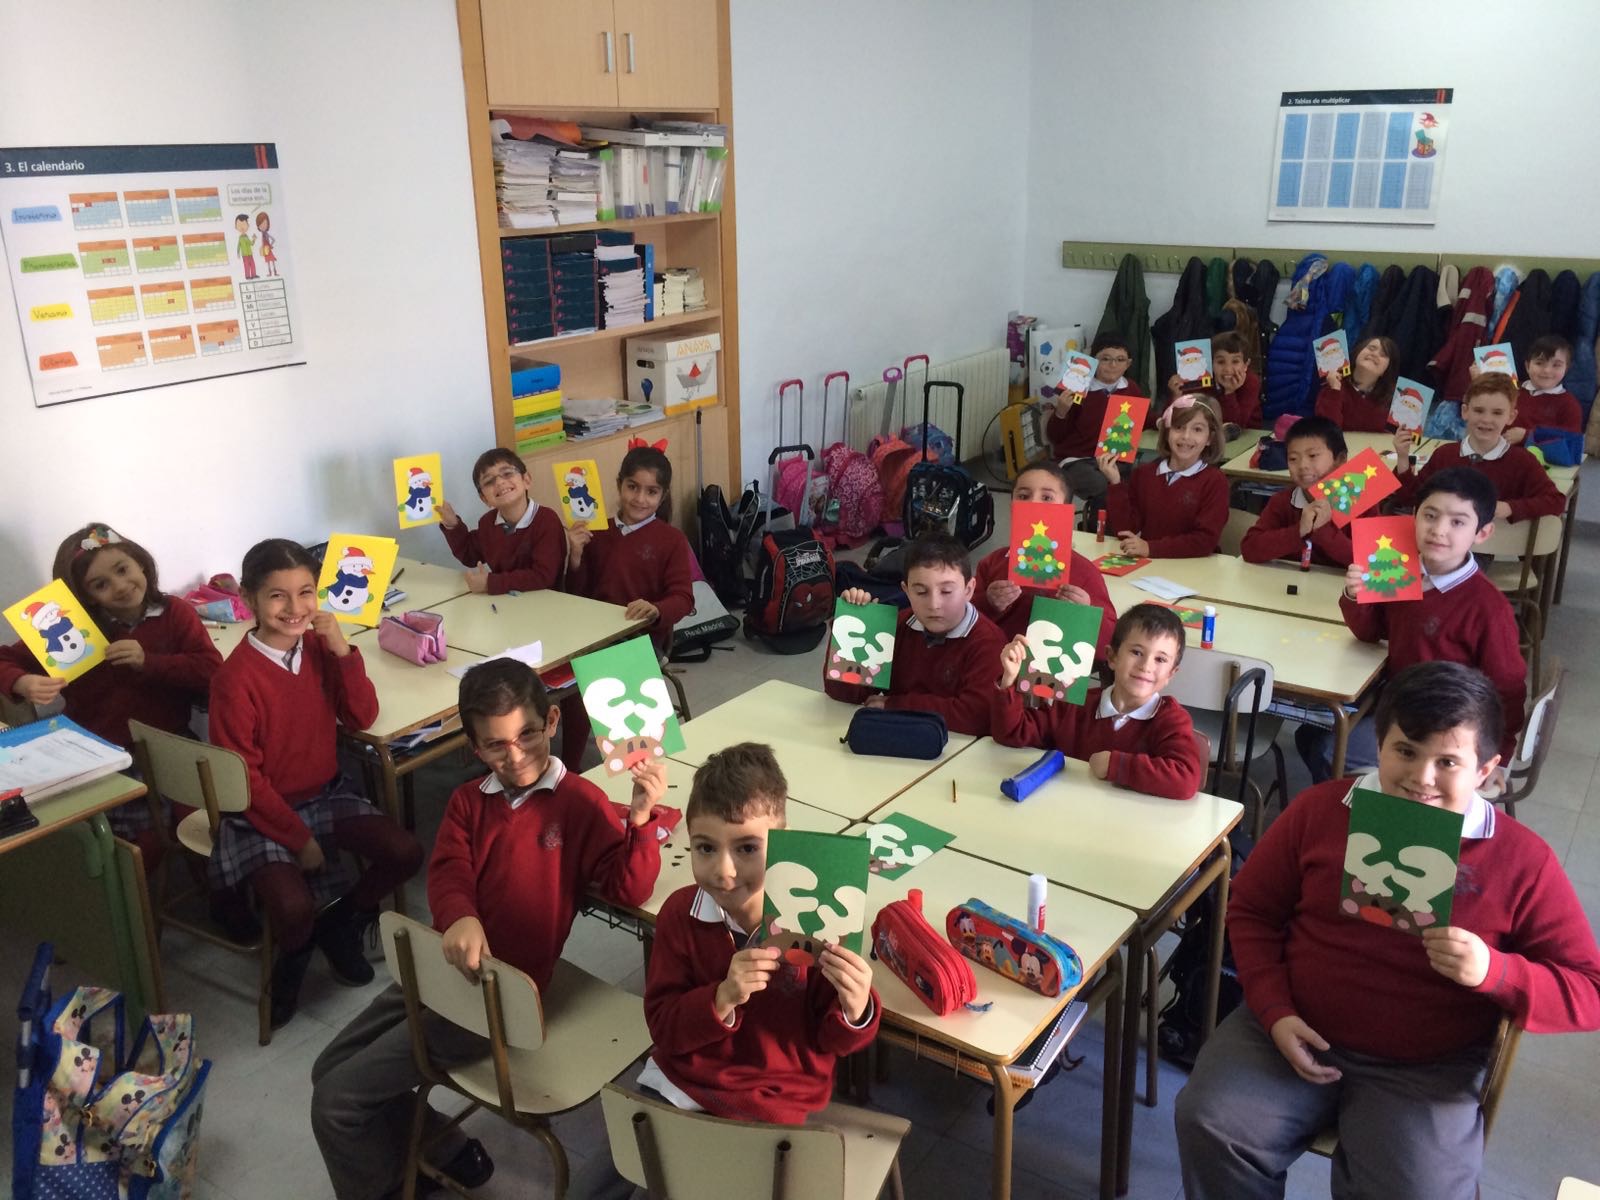 Nuevo proyecto europeo eTwinning en el colegio Don Cristóbal de Manzanares